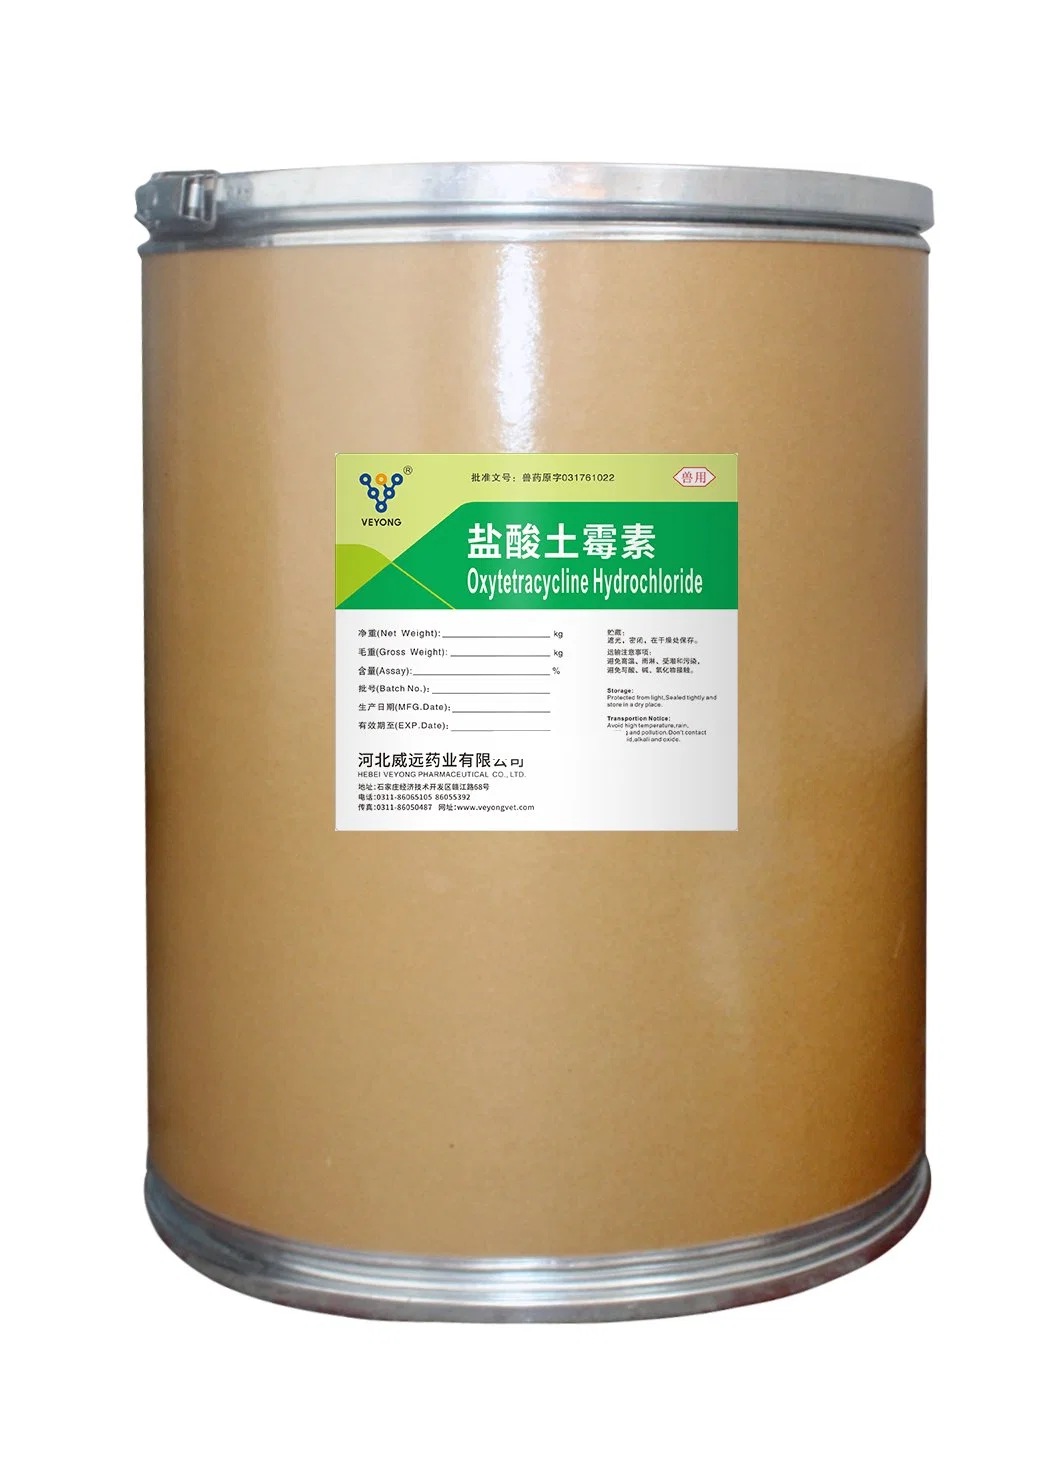 China Pharmazeutische Fabriken liefern Pharmazeutische chemische Oxytetracycline HCl, injizierbar, EP10, Fabrik Lieferant